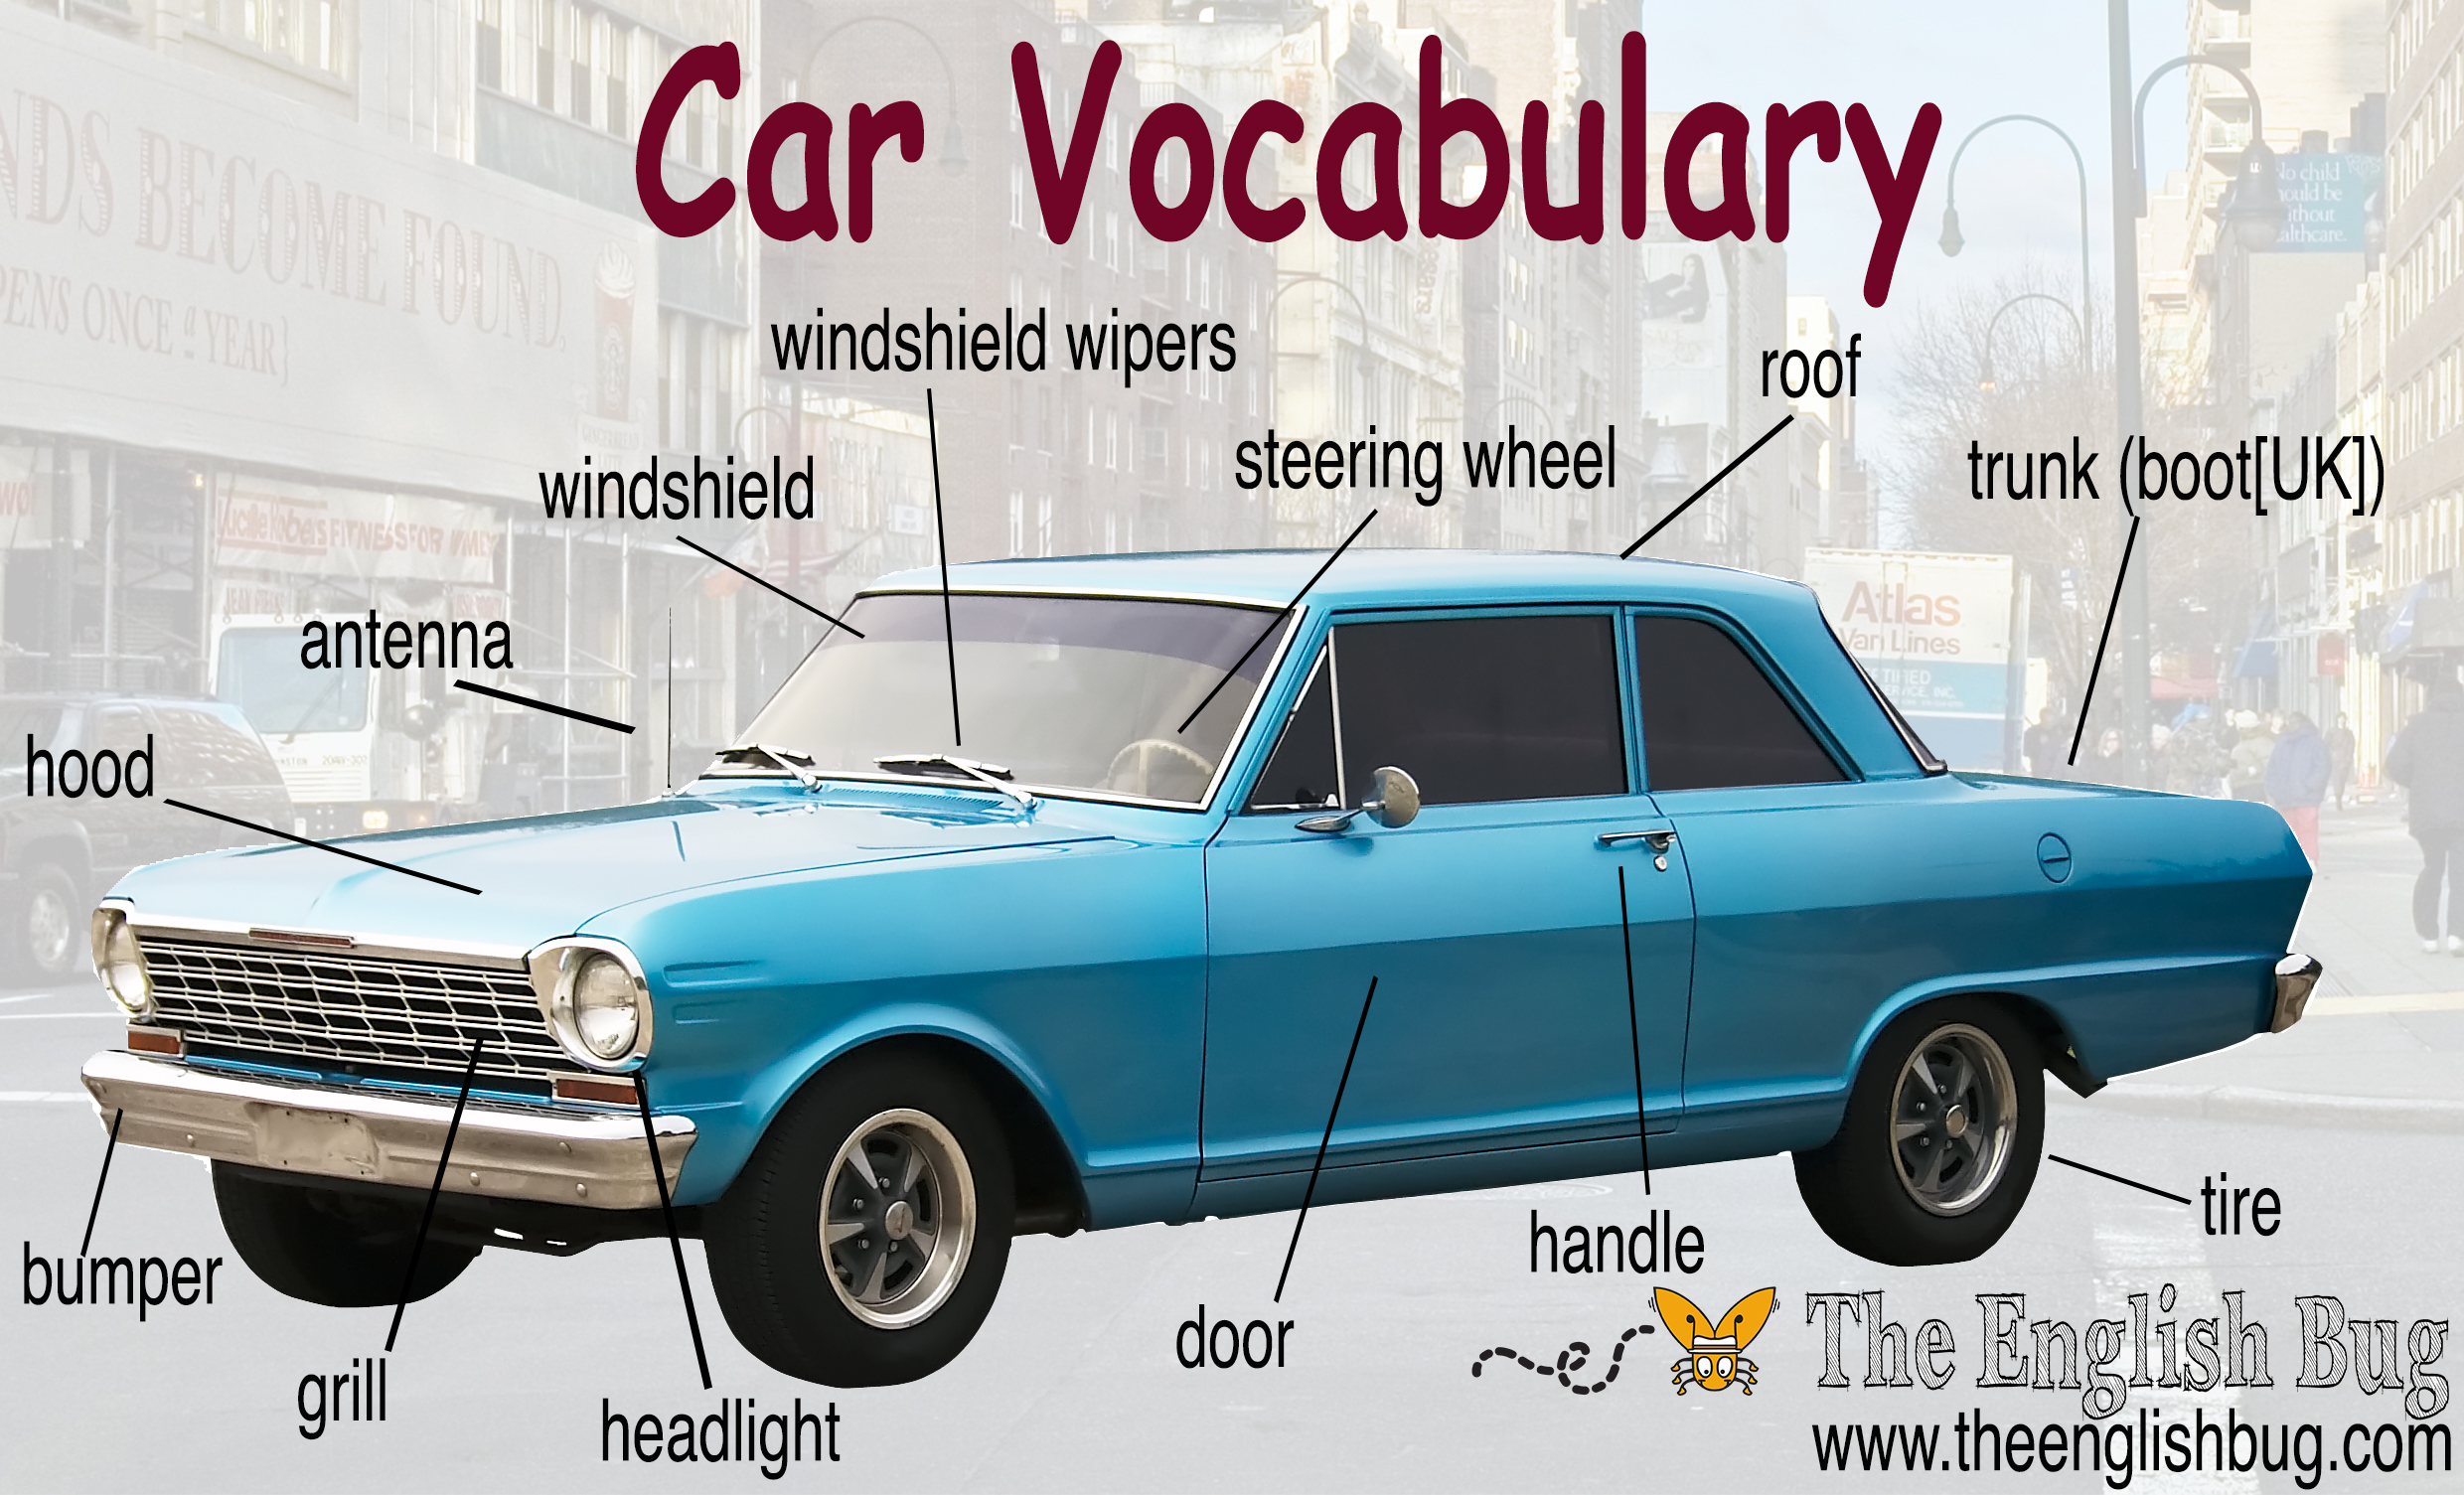 Cars перевод на русский с английского. Машина на английском языке. Car Vocabulary. Вокабуляр на английском автомобили. Устройство автомобиля на английском.